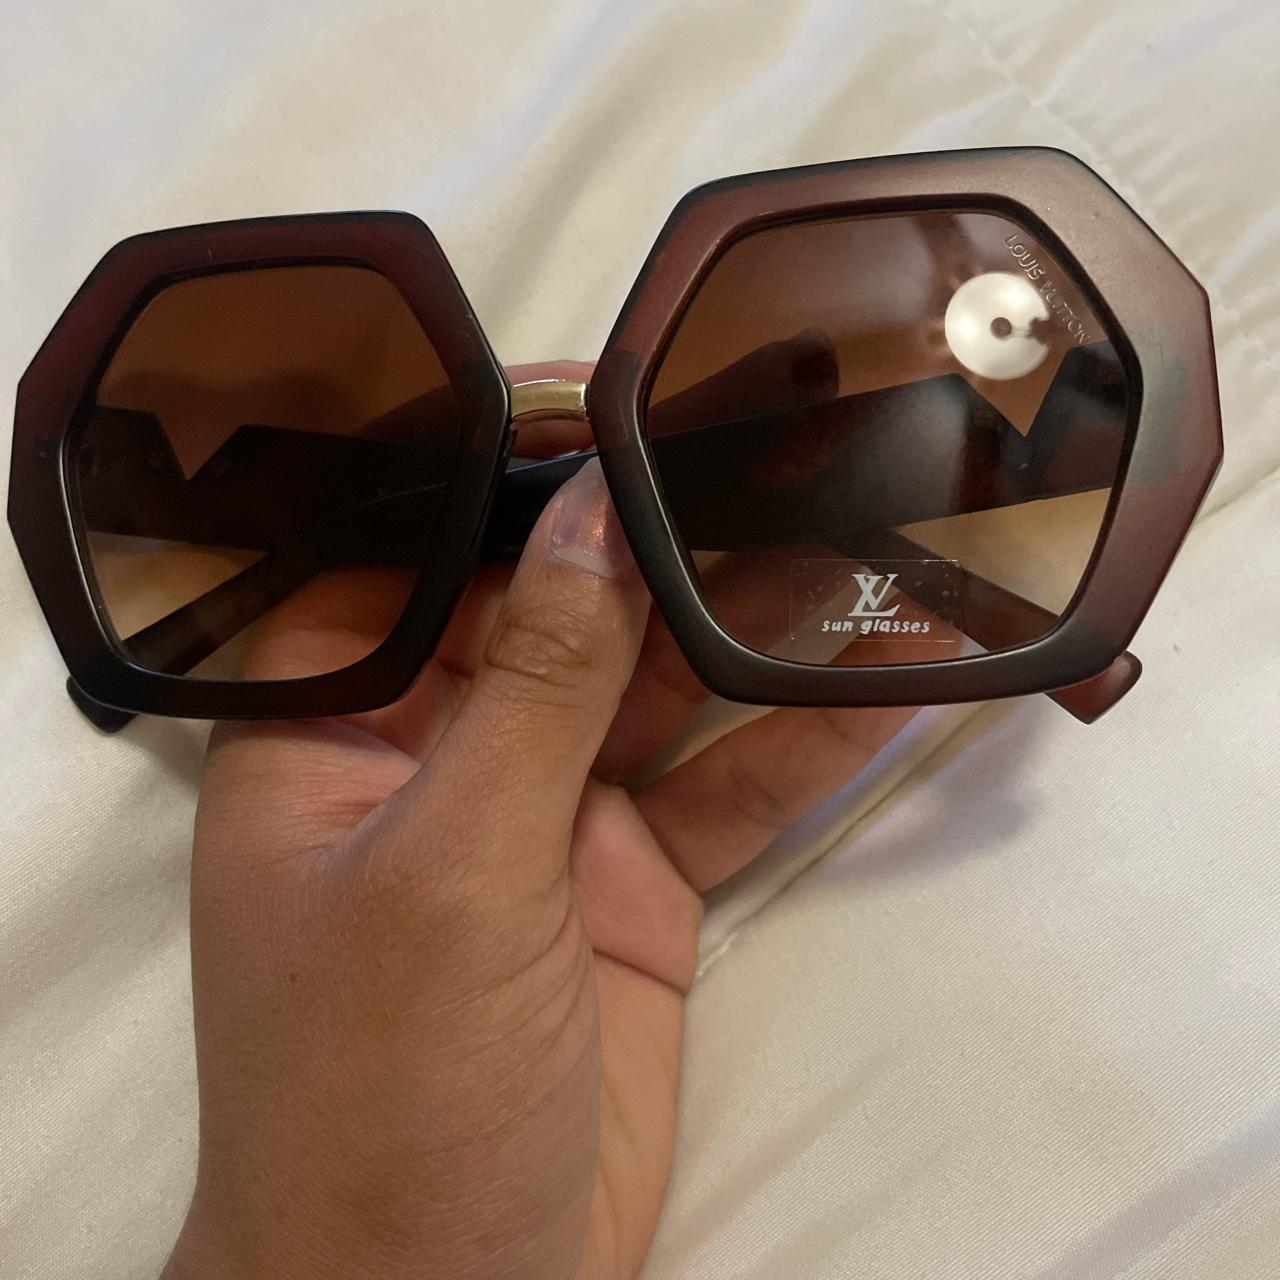 Louis Vuitton glasses - Depop